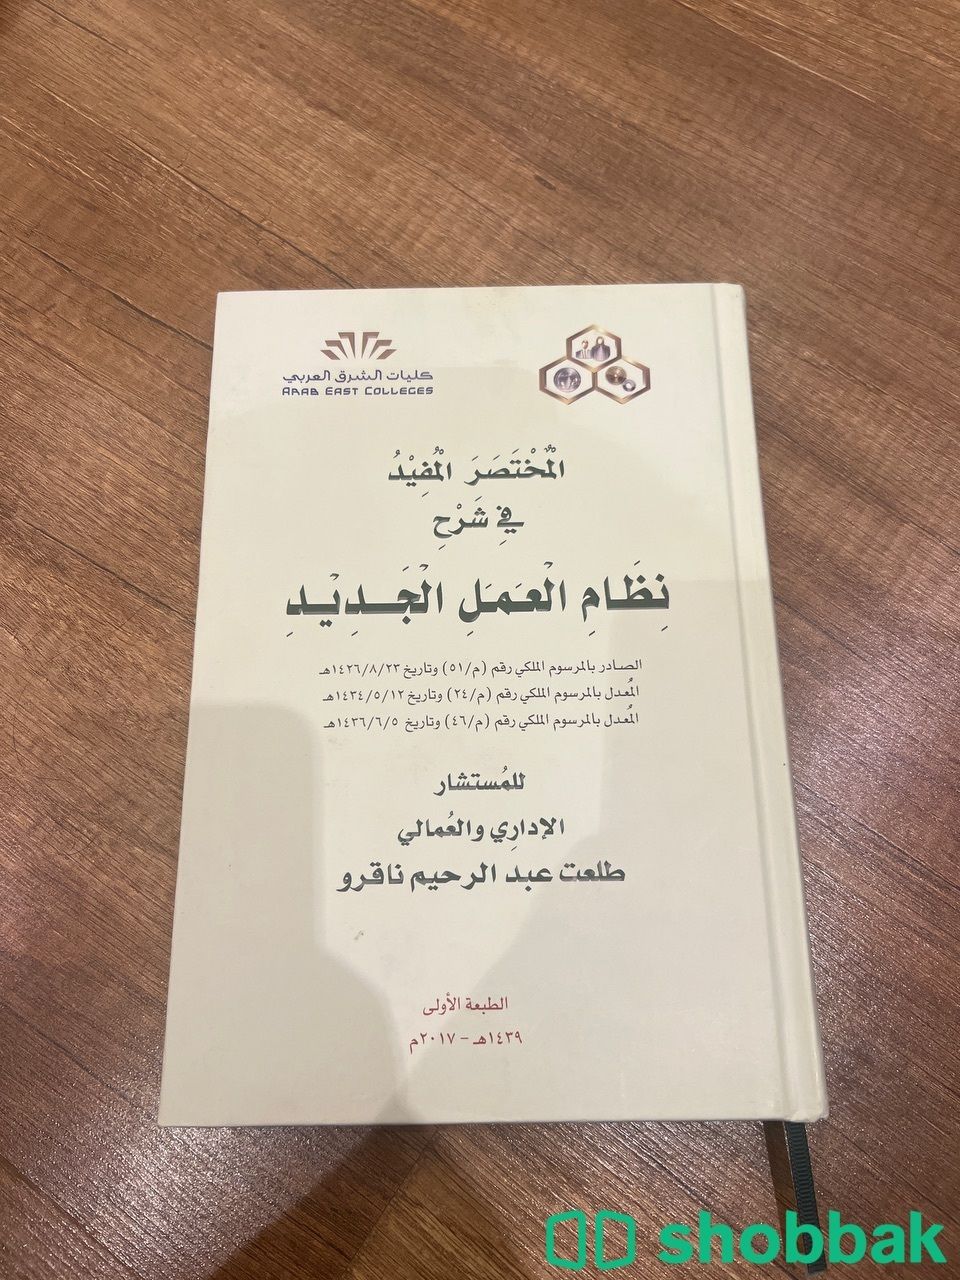  كتاب نظام العمل الجديد  Shobbak Saudi Arabia